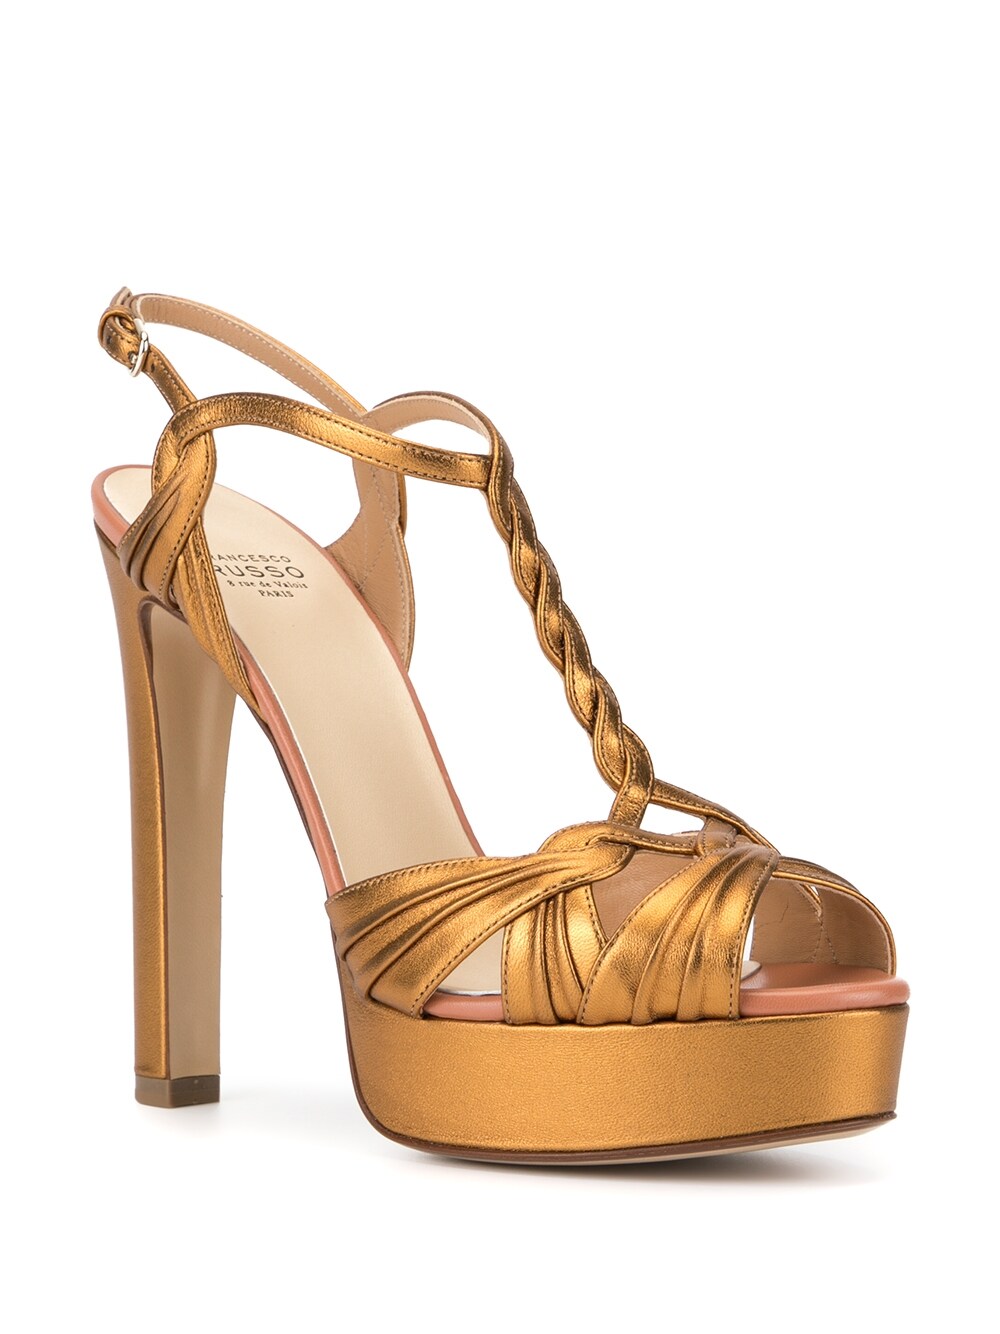 Gold high heel platform sandals - women